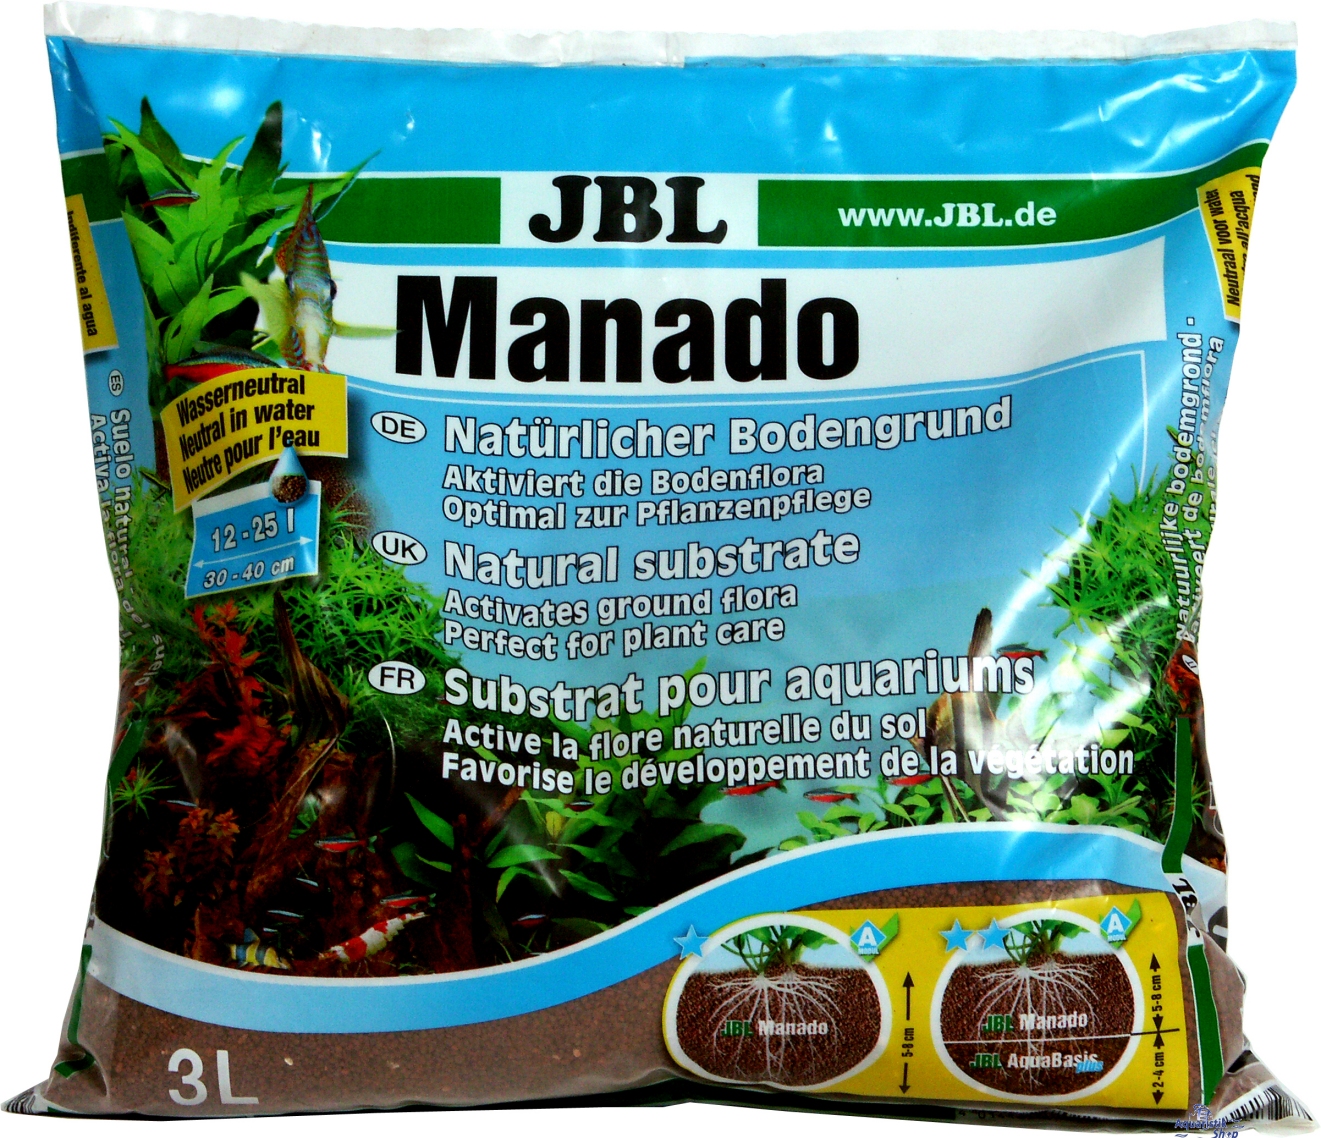 JBL Manado  1.5 L / 3.0 L / 5.0 L / 25.0 L